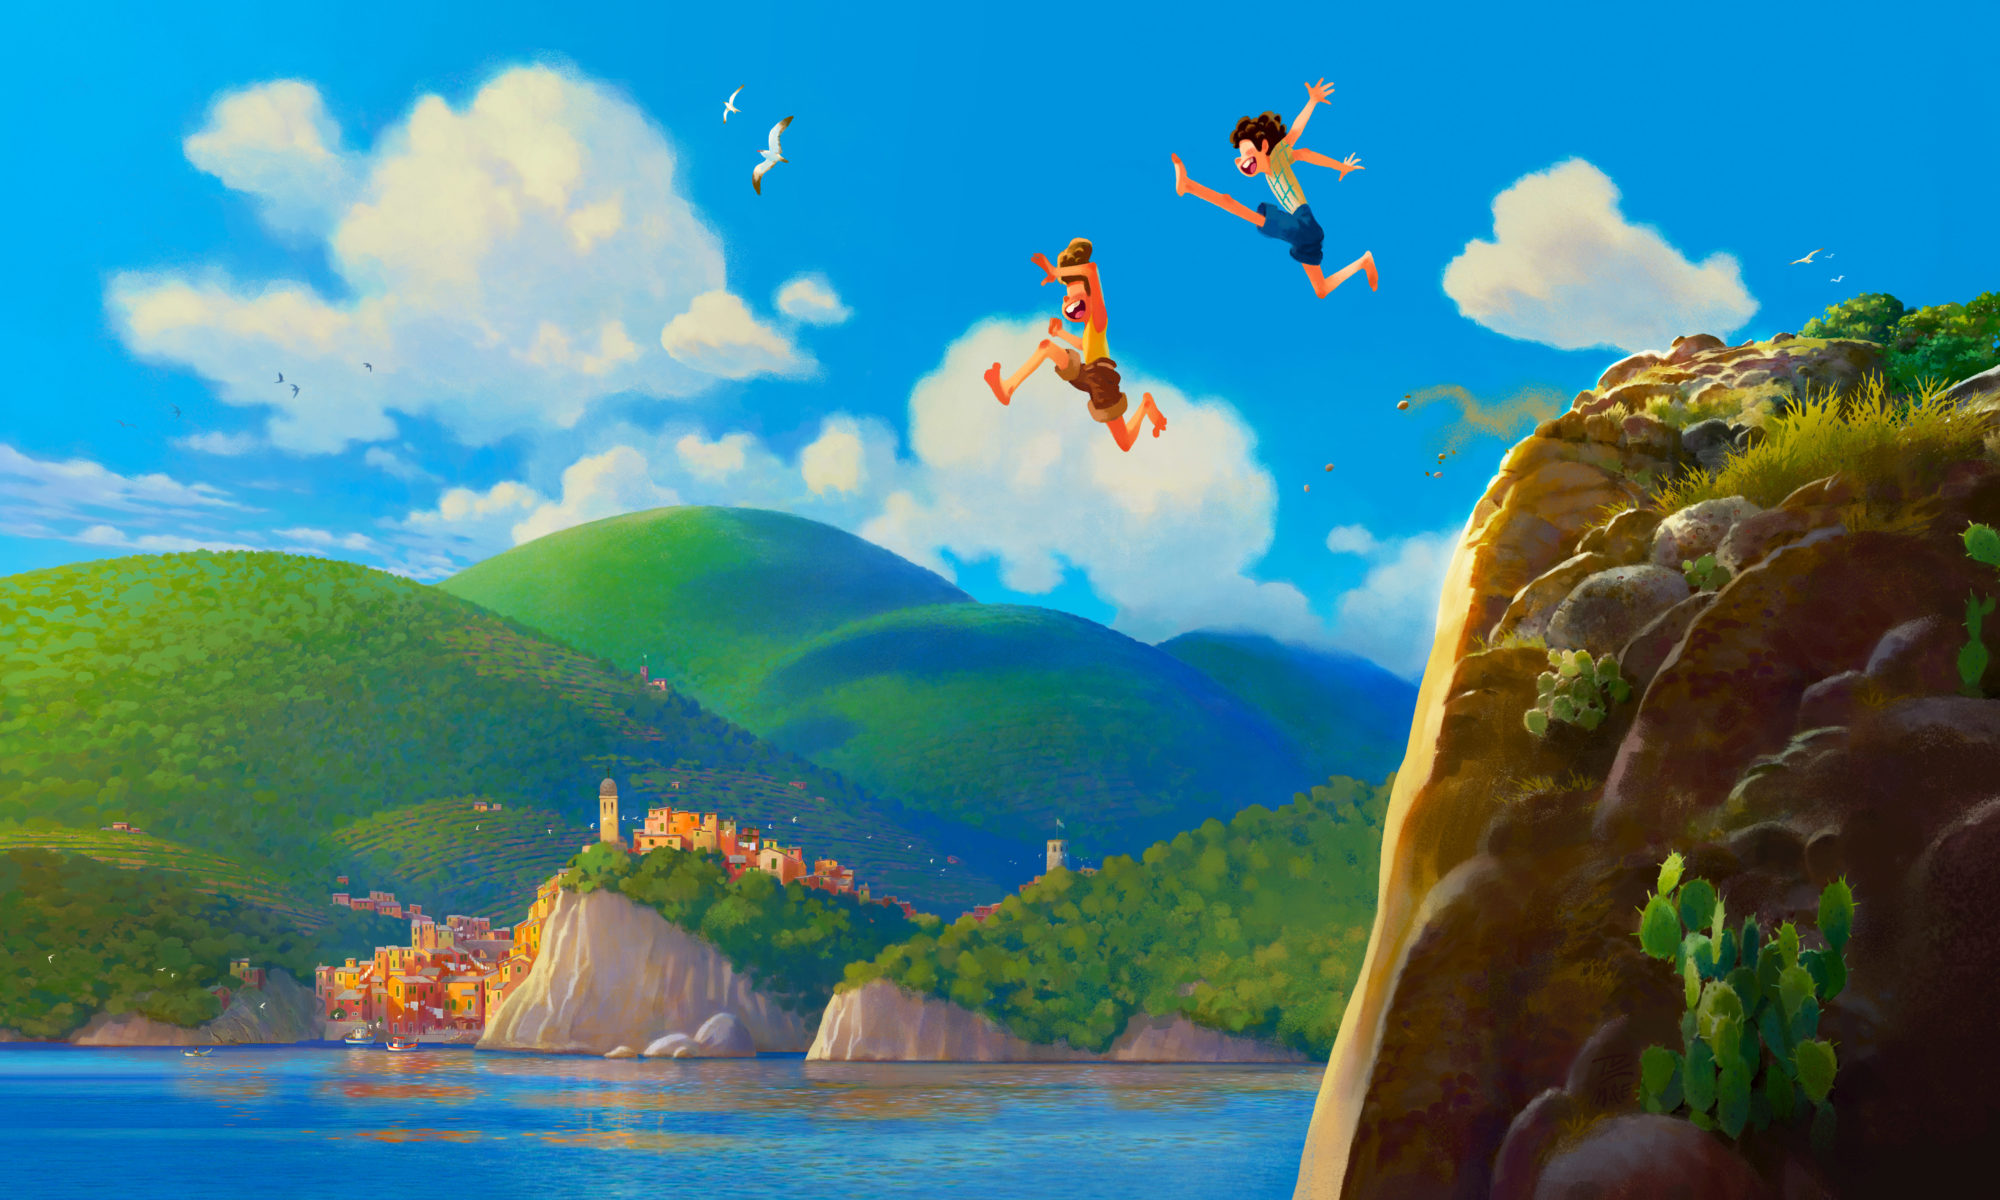 Disney-Pixar's LUCA